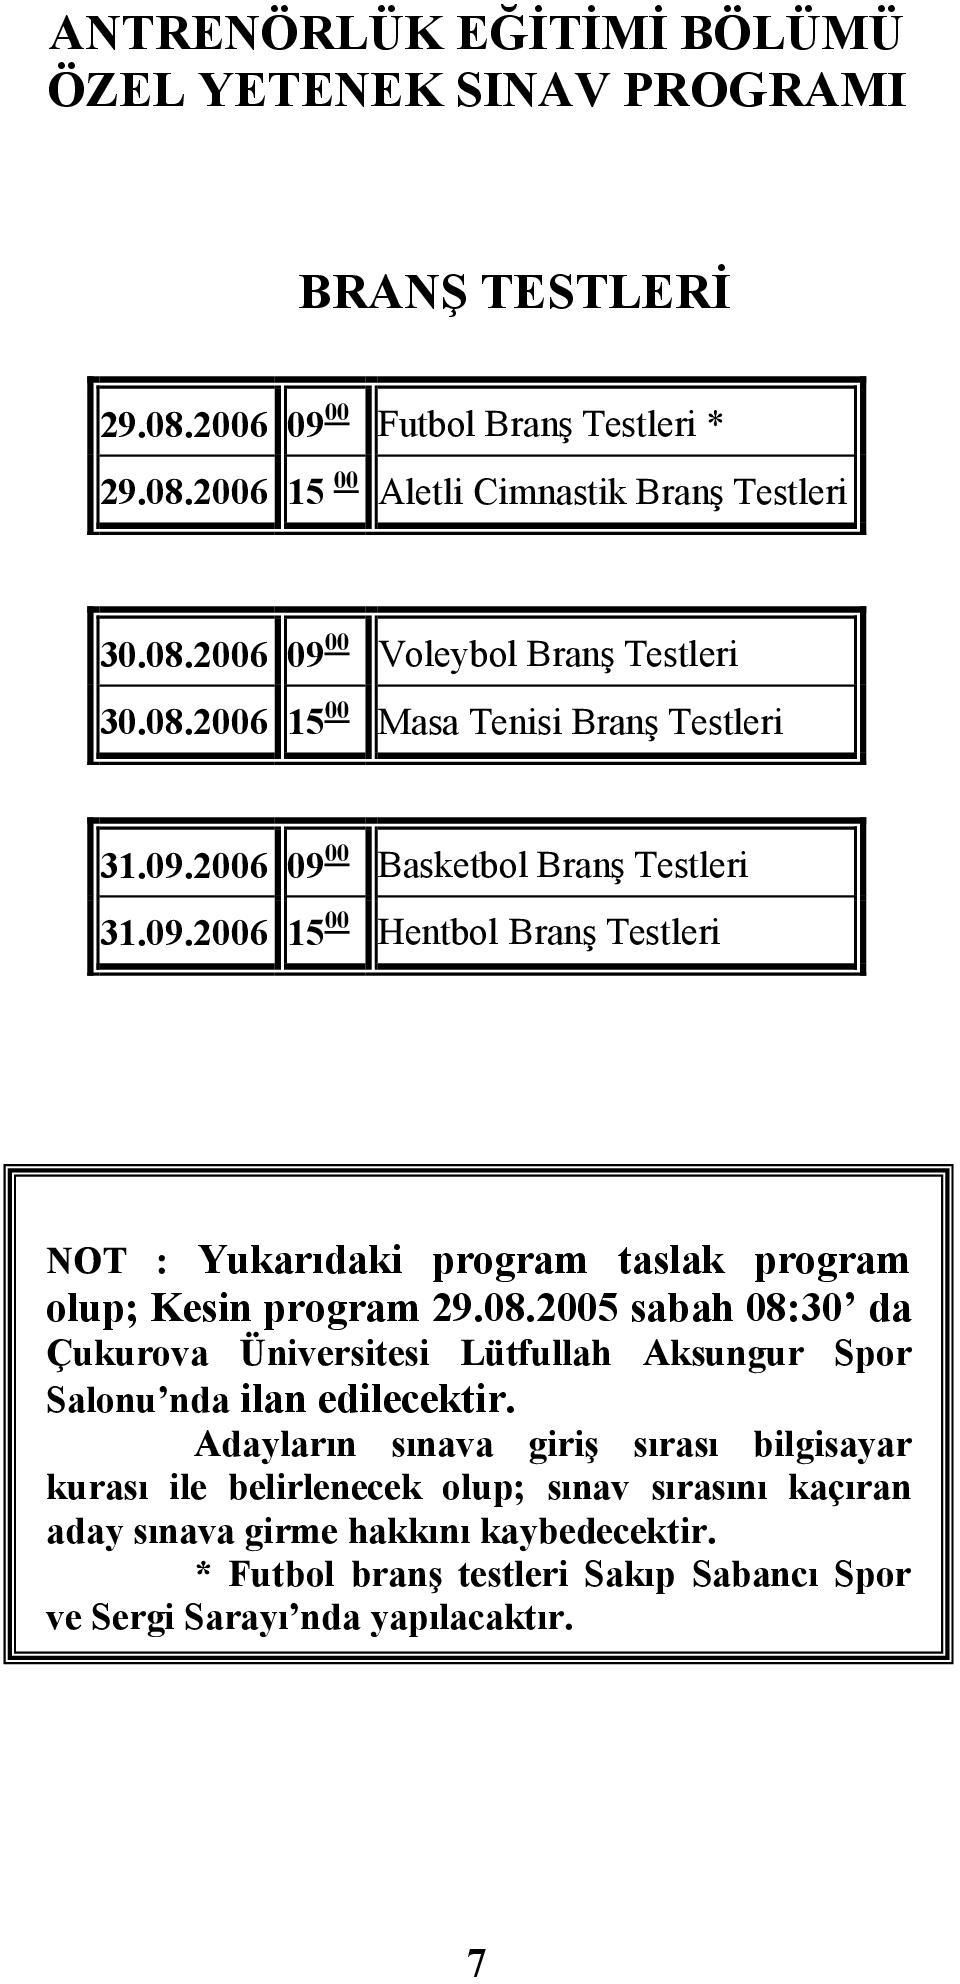 2006 09 00 00 31.09.2006 15 Basketbol Branş Testleri Hentbol Branş Testleri NOT : Yukarıdaki program taslak program olup; Kesin program 29.08.